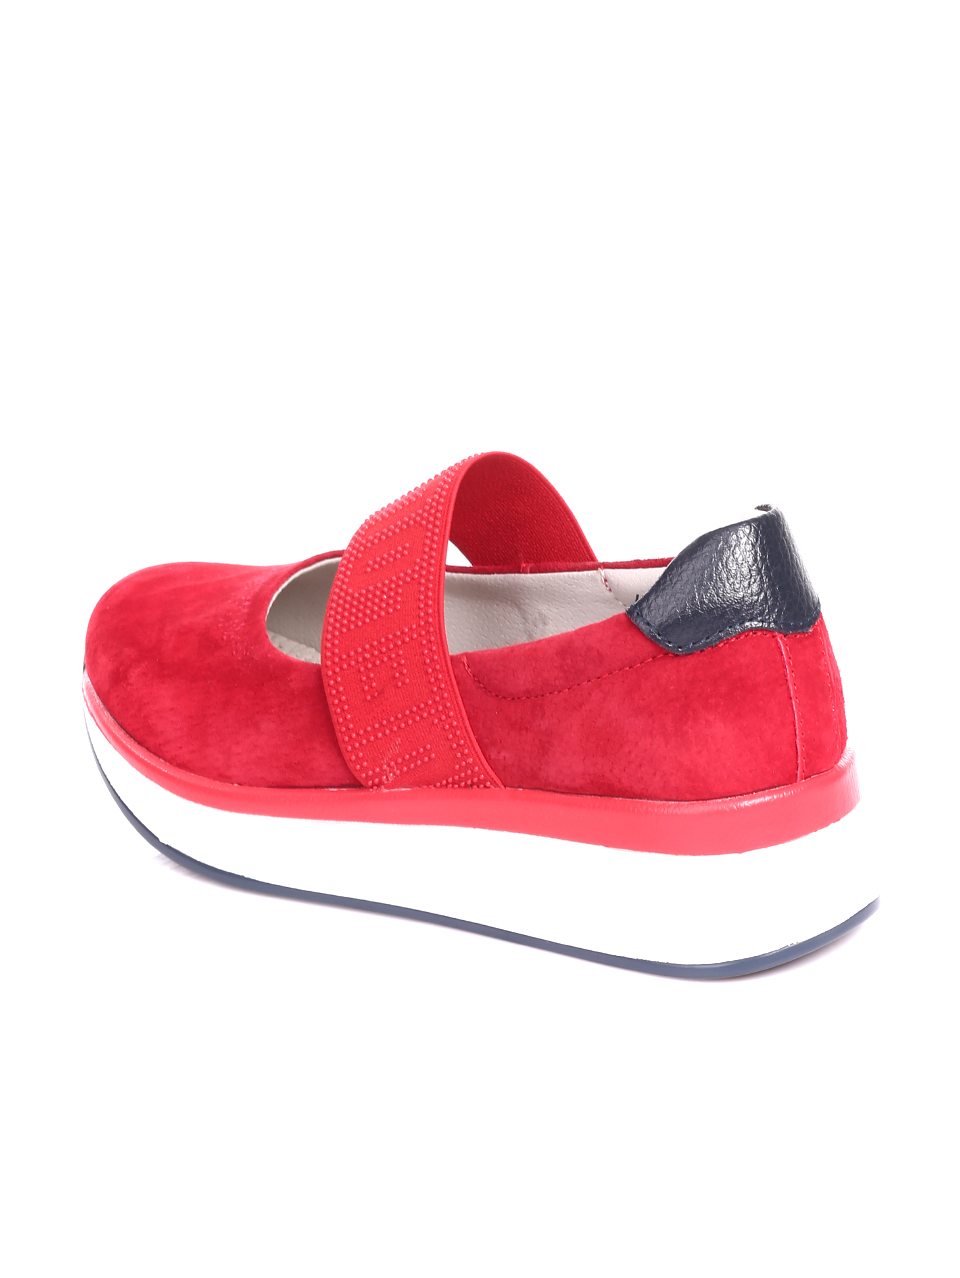 Ежедневни дамски обувки на платформа от велур в червено 3AF-20044 red